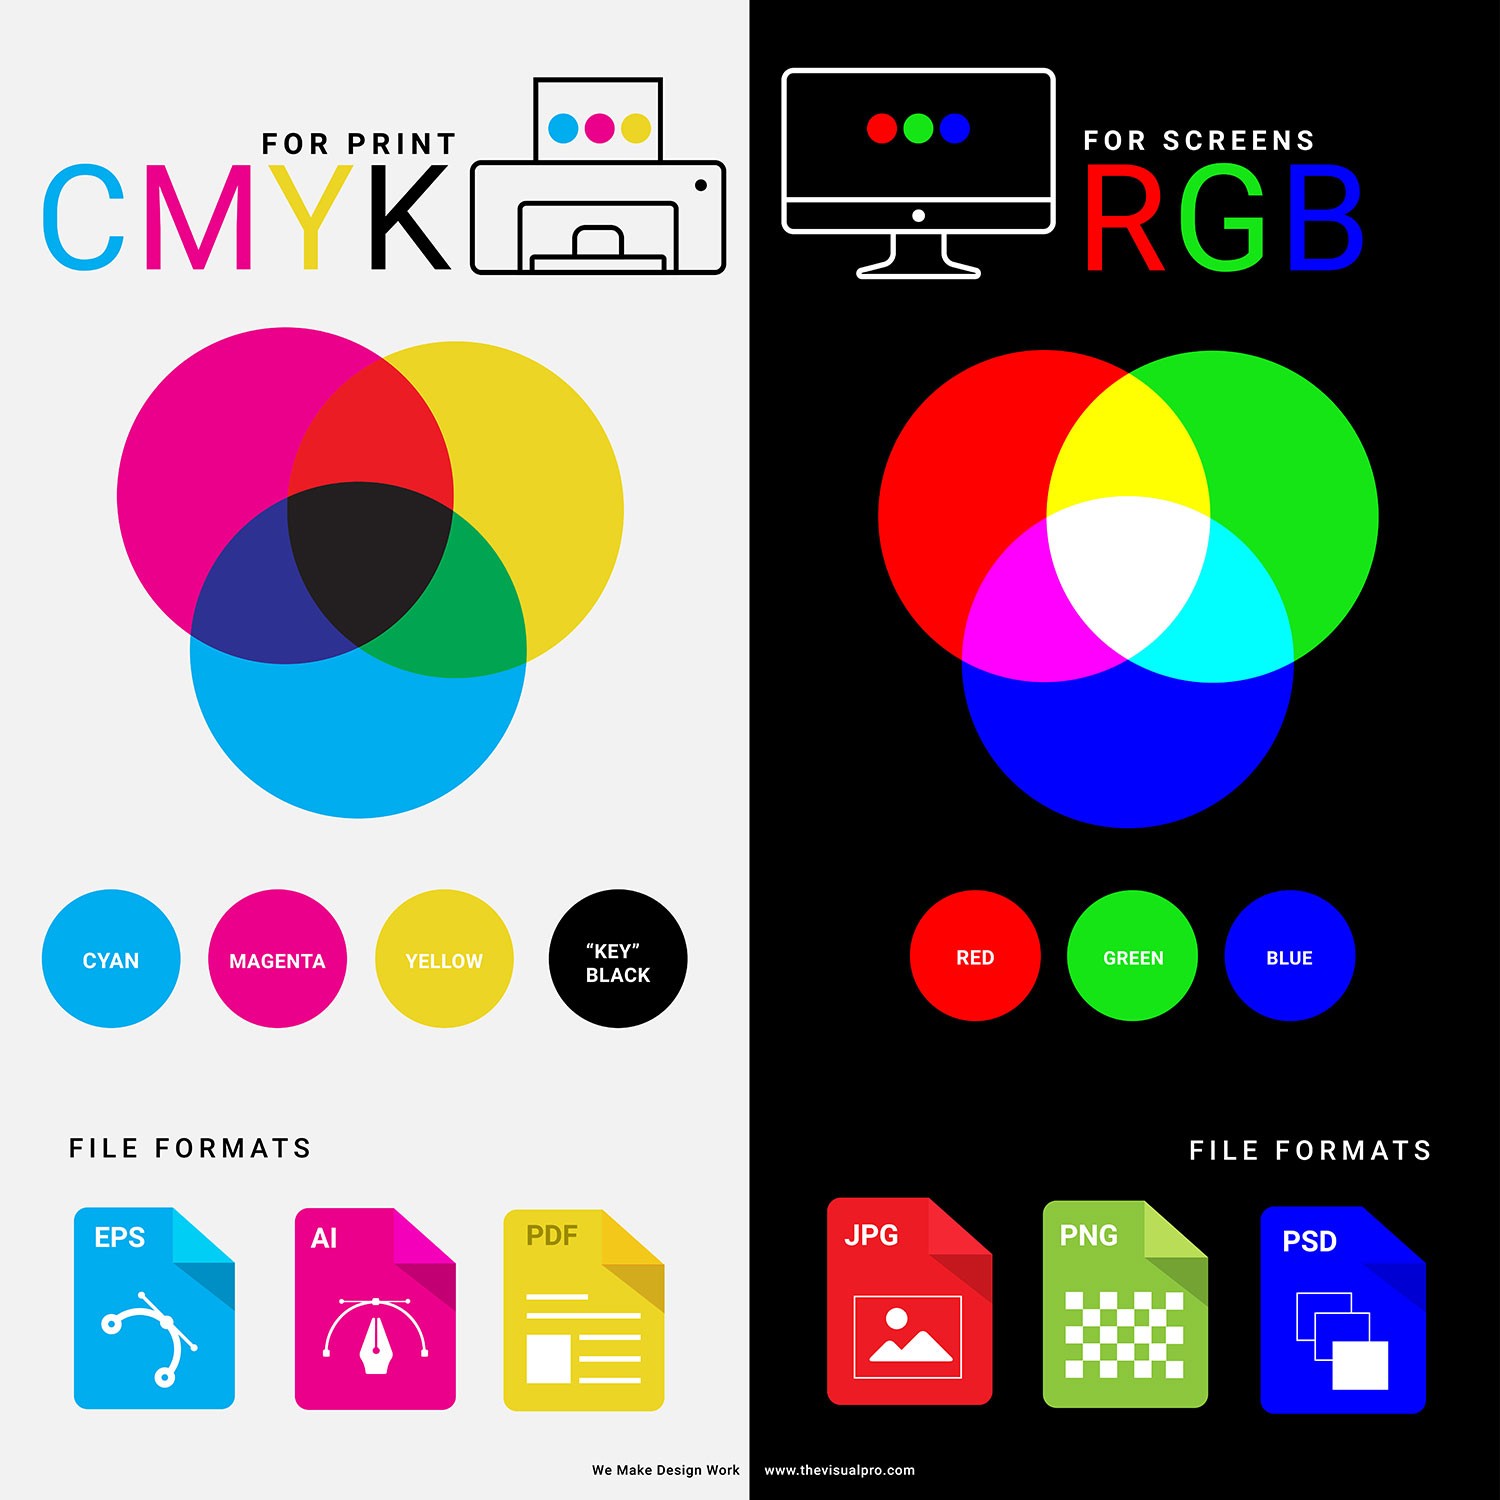 Cách chuyển đổi từ hệ RGB của thiết kế sang hệ CYMK của in ấn